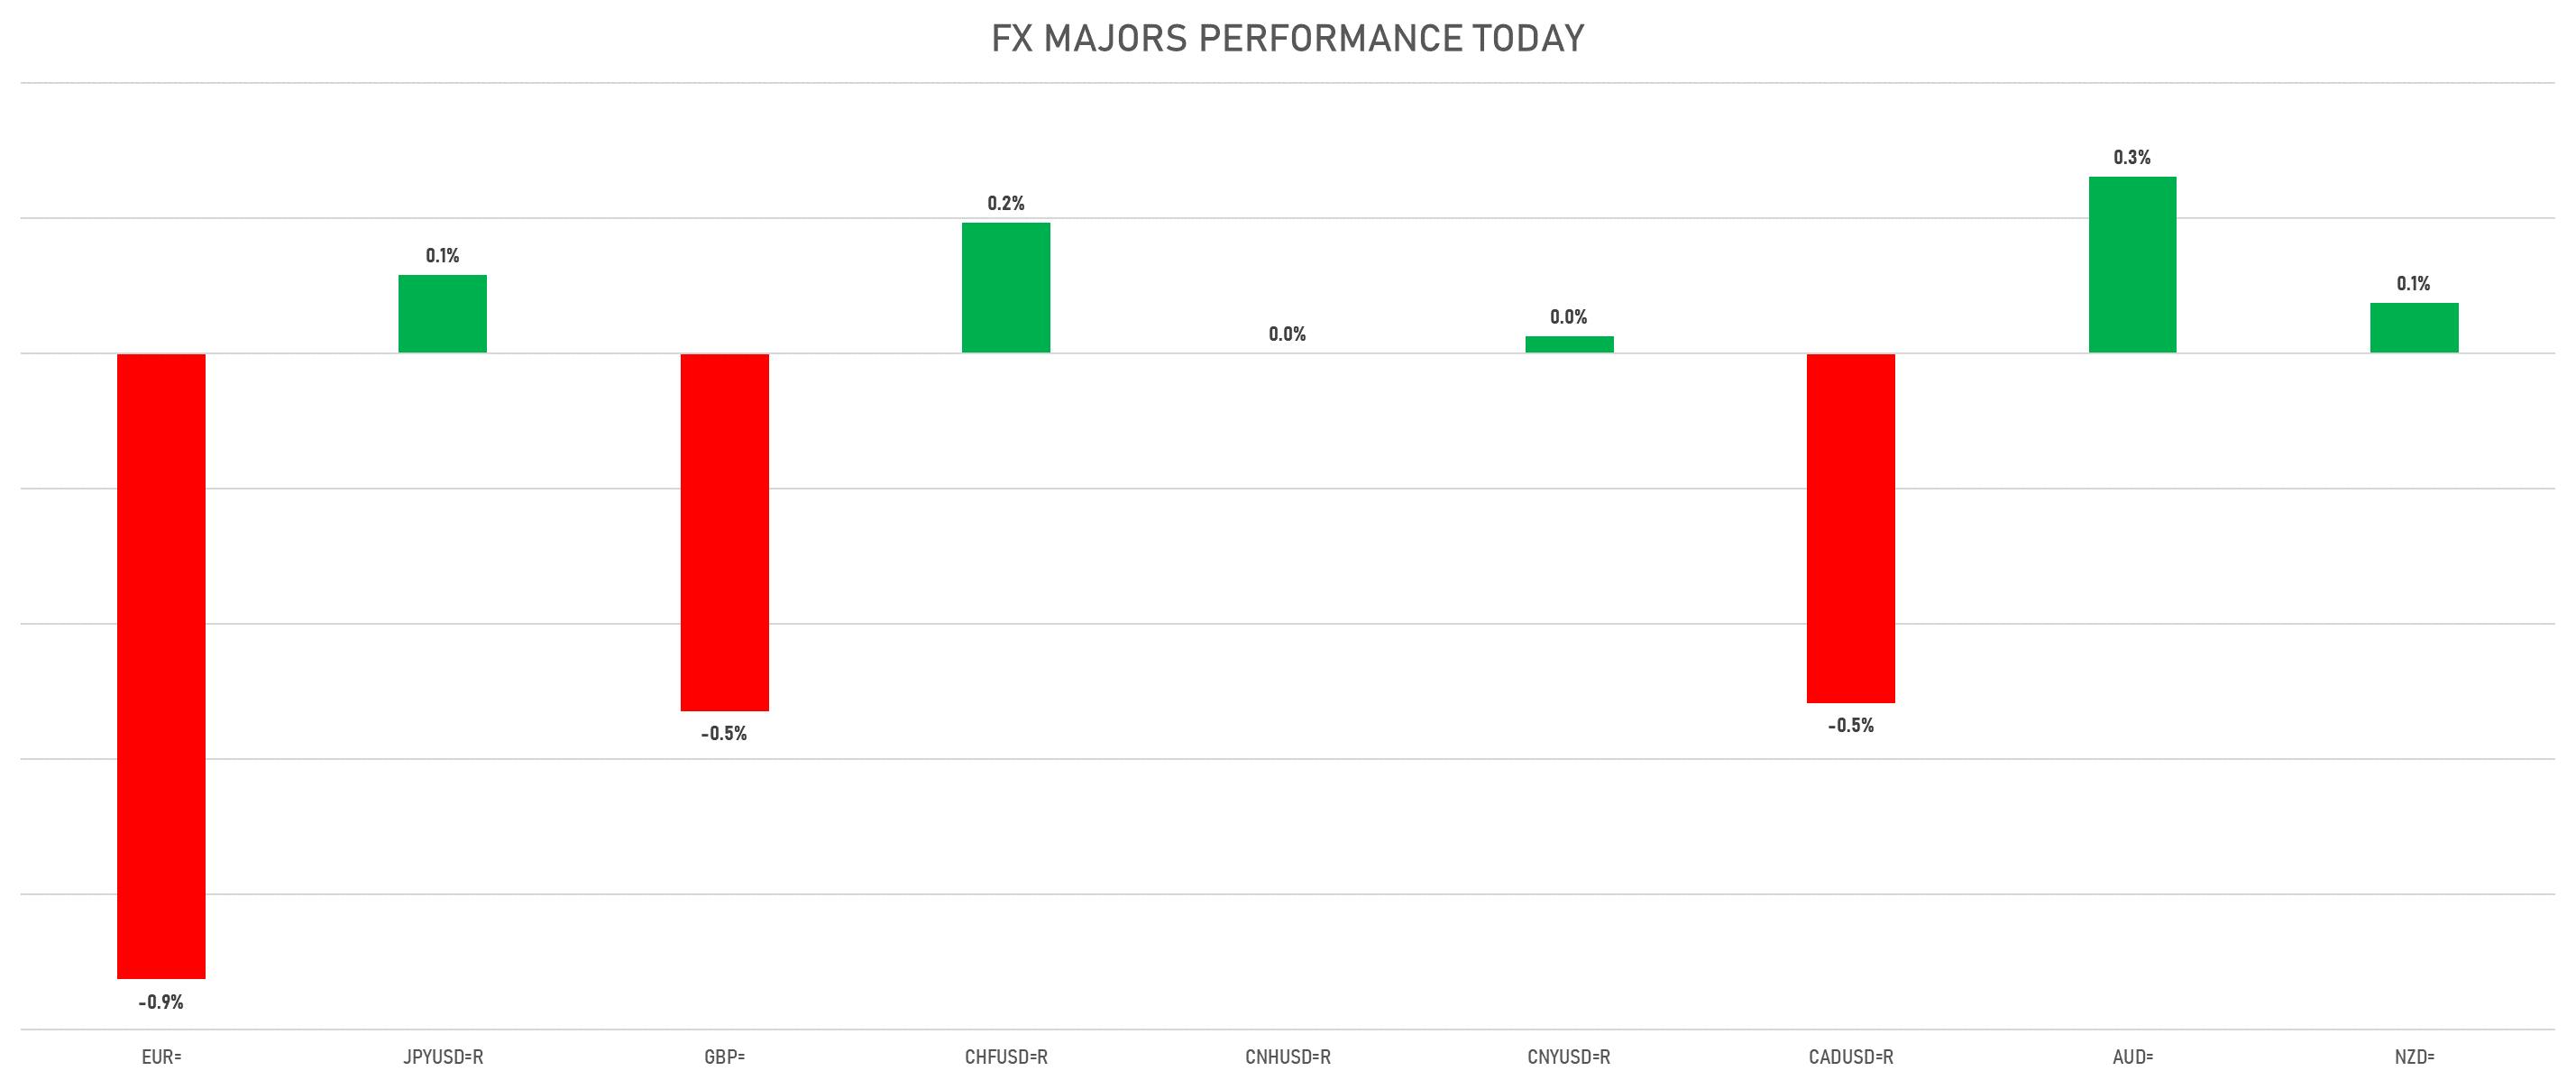 FX Majors Today | Sources: phipost.com, Refinitiv data